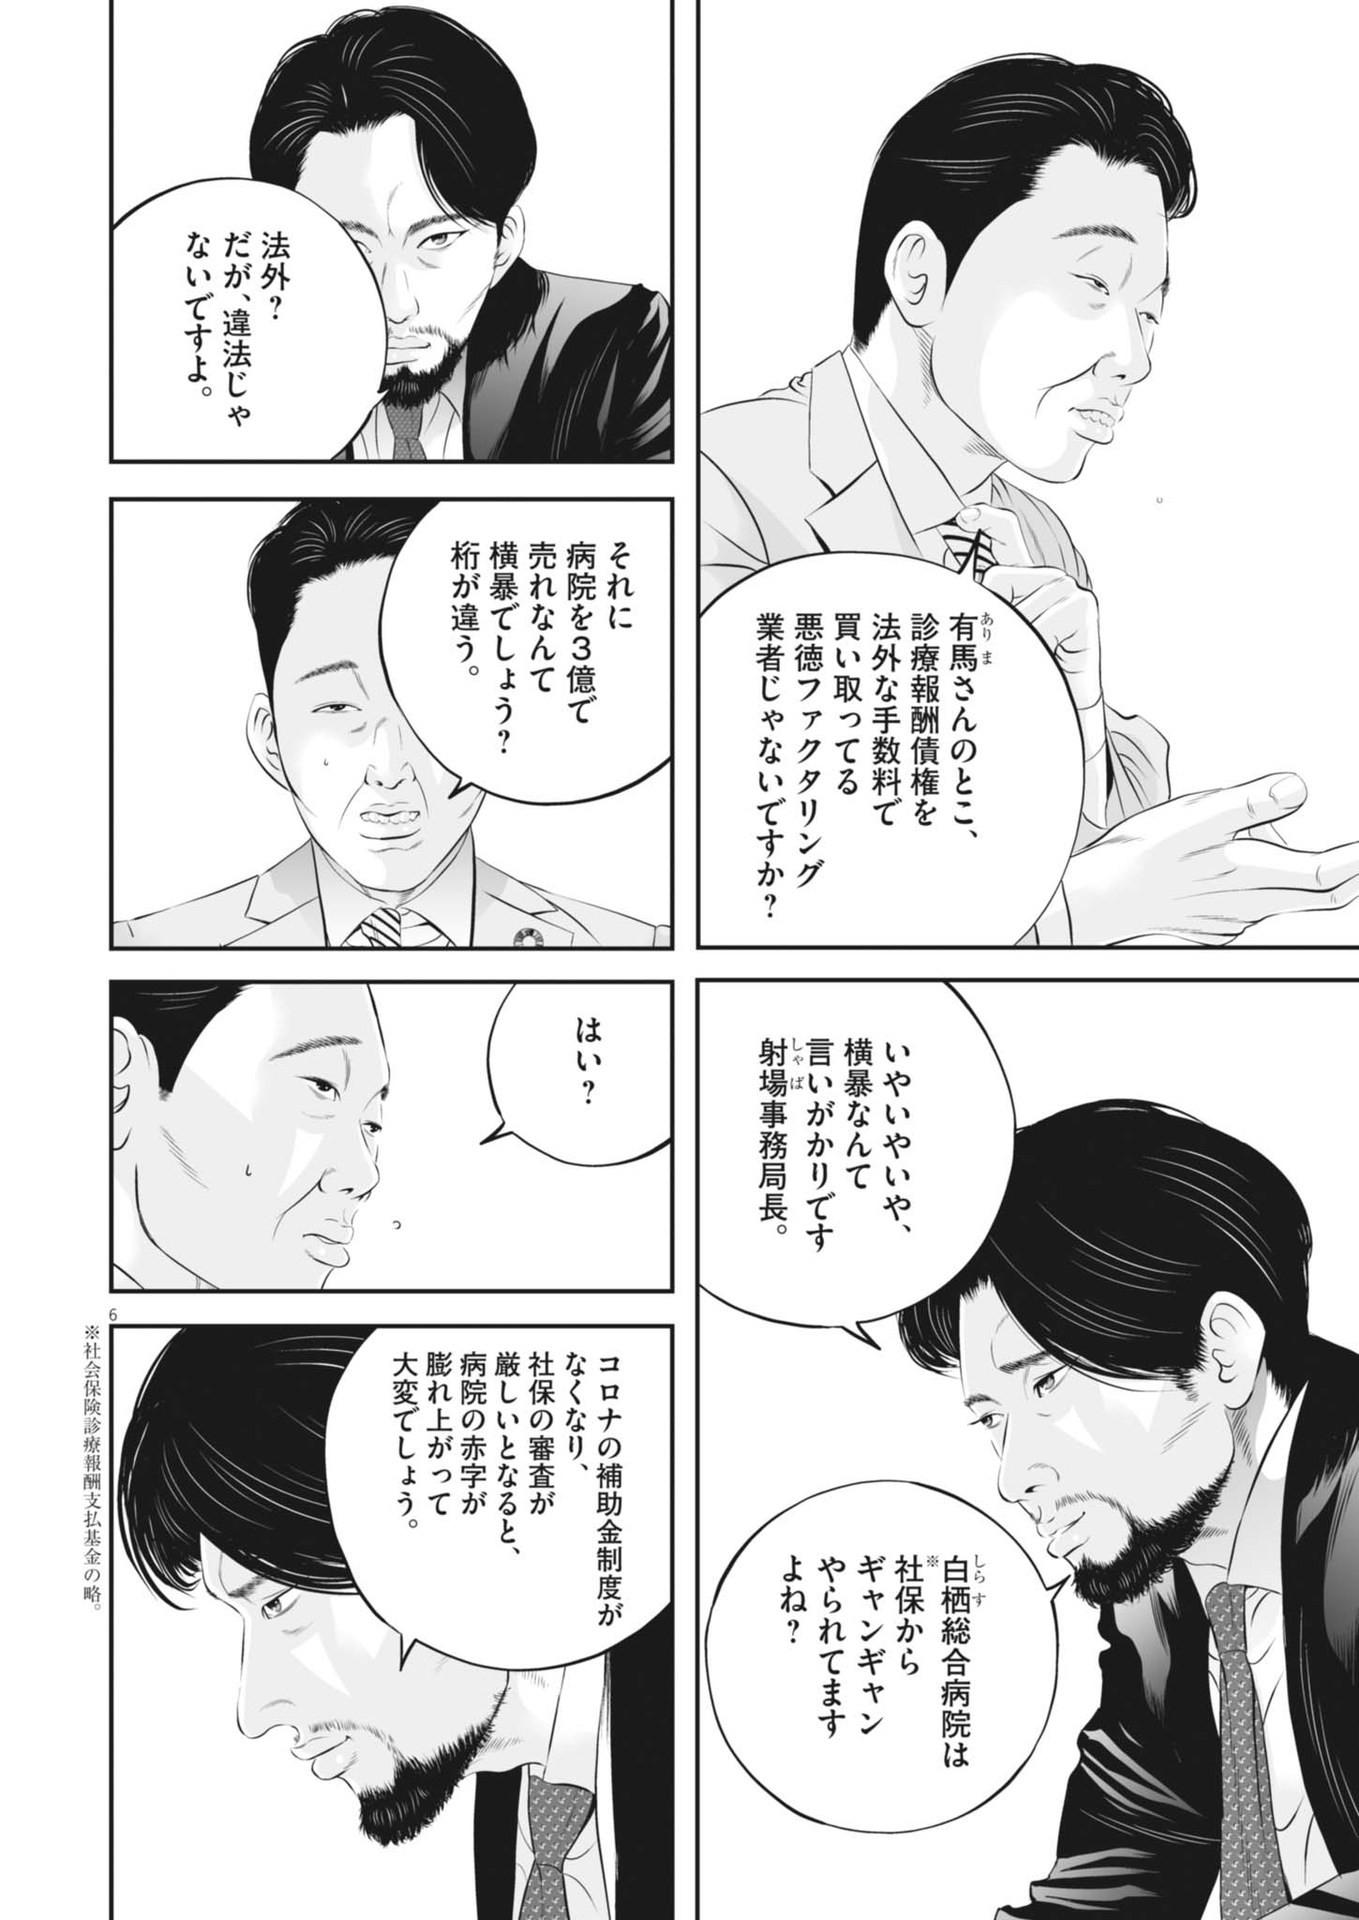 Kujou no Taizai - Chapter 100 - Page 6